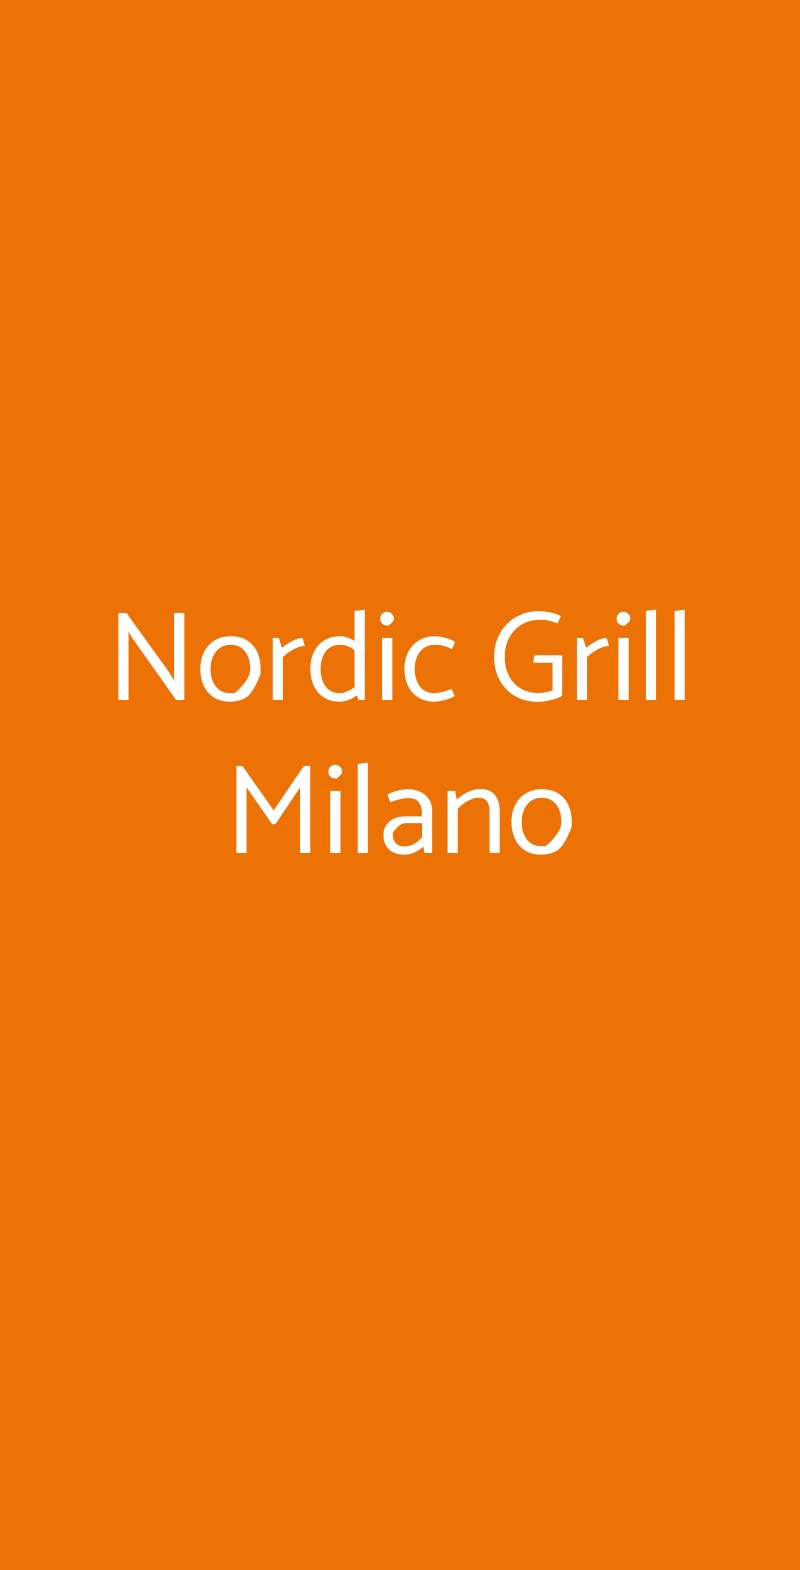 Nordic Grill Milano Milano menù 1 pagina